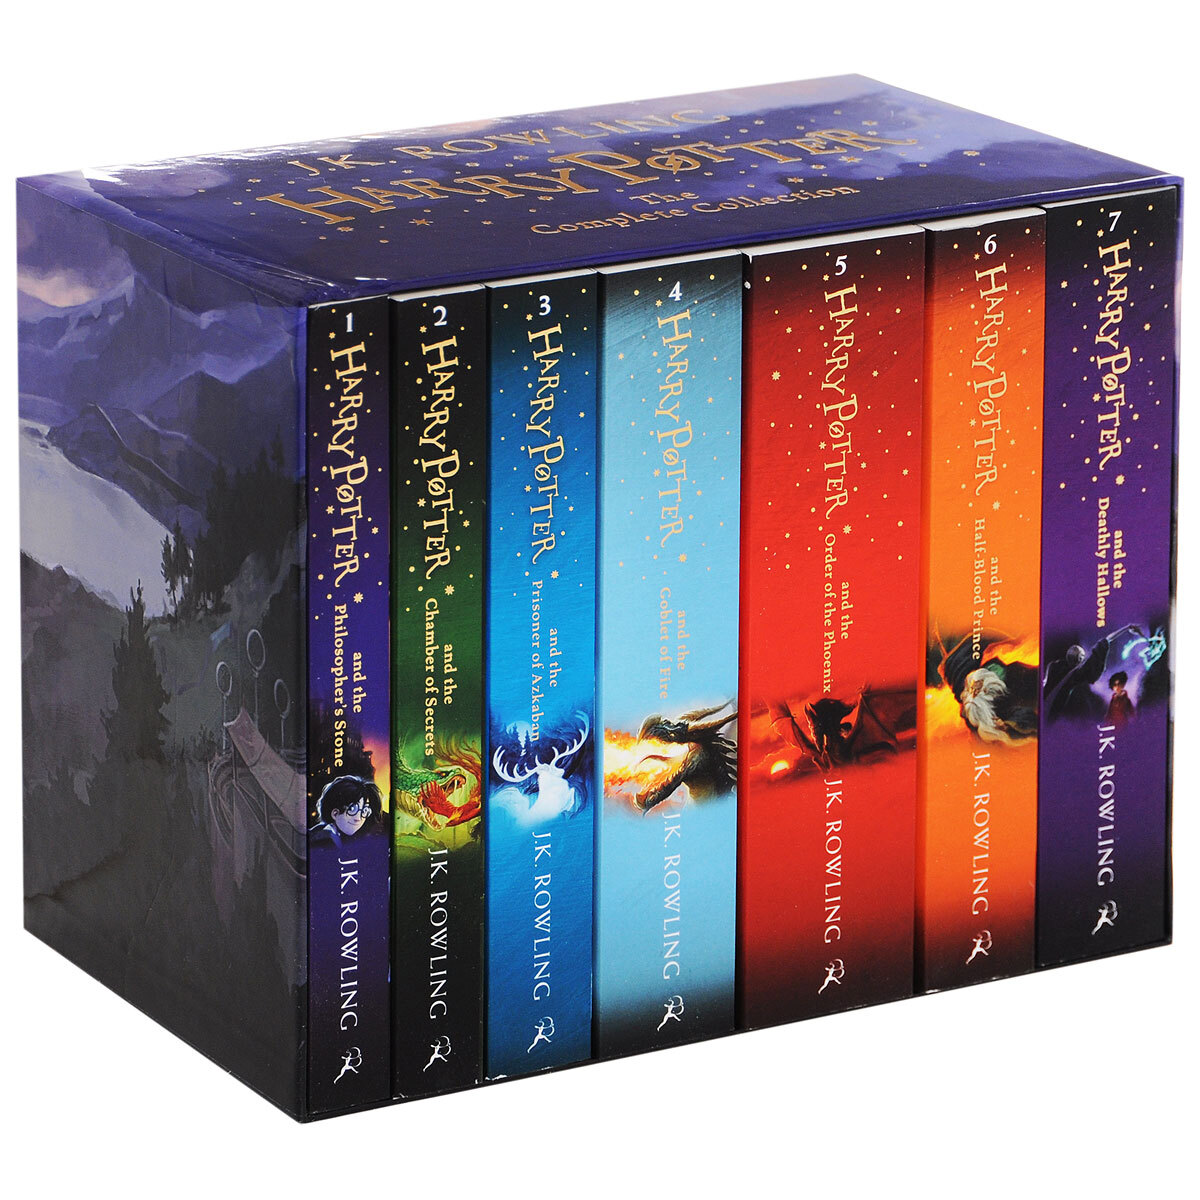 Поттер последовательность книг. Harry Potter. The complete collection (комплект из 7 книг).